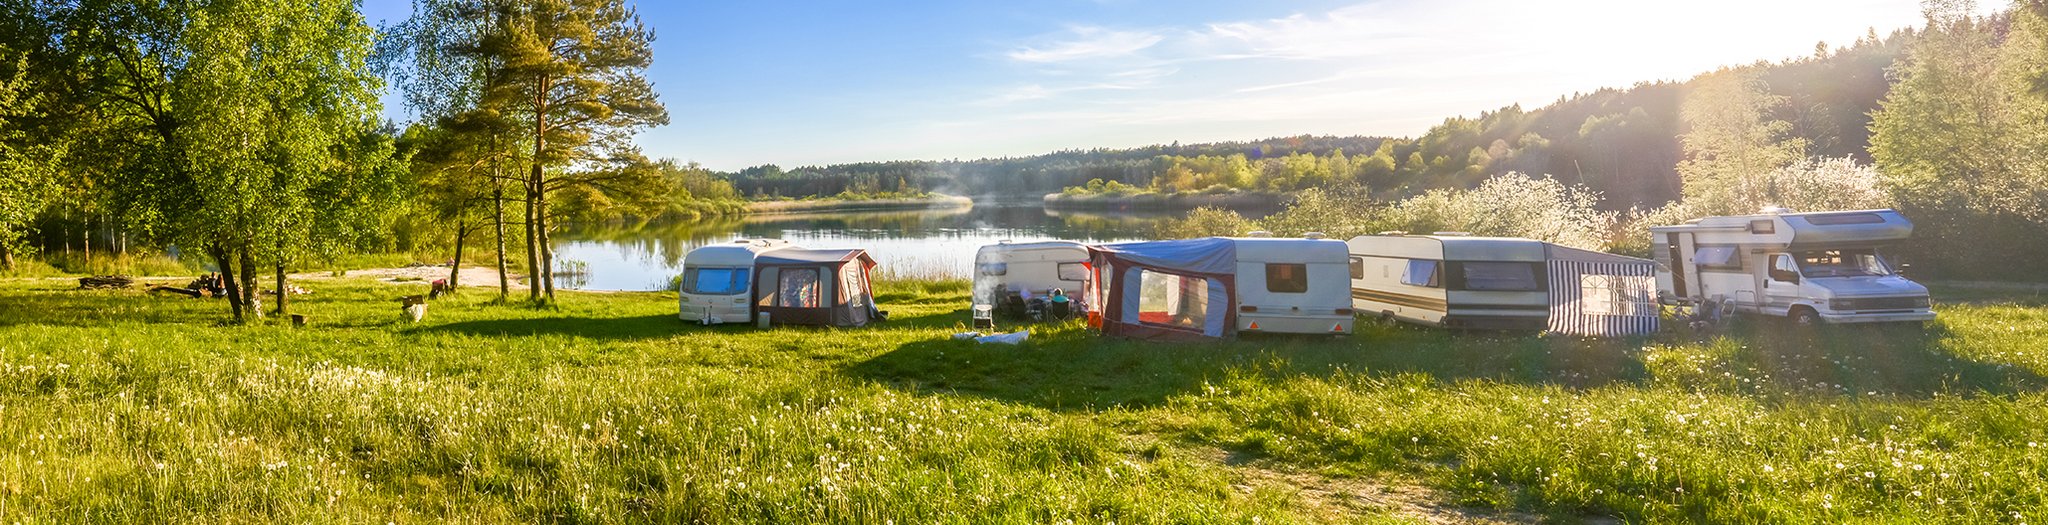 Das Bild zeigt eine Flusslandschaft mit Wohnwagen und Campern